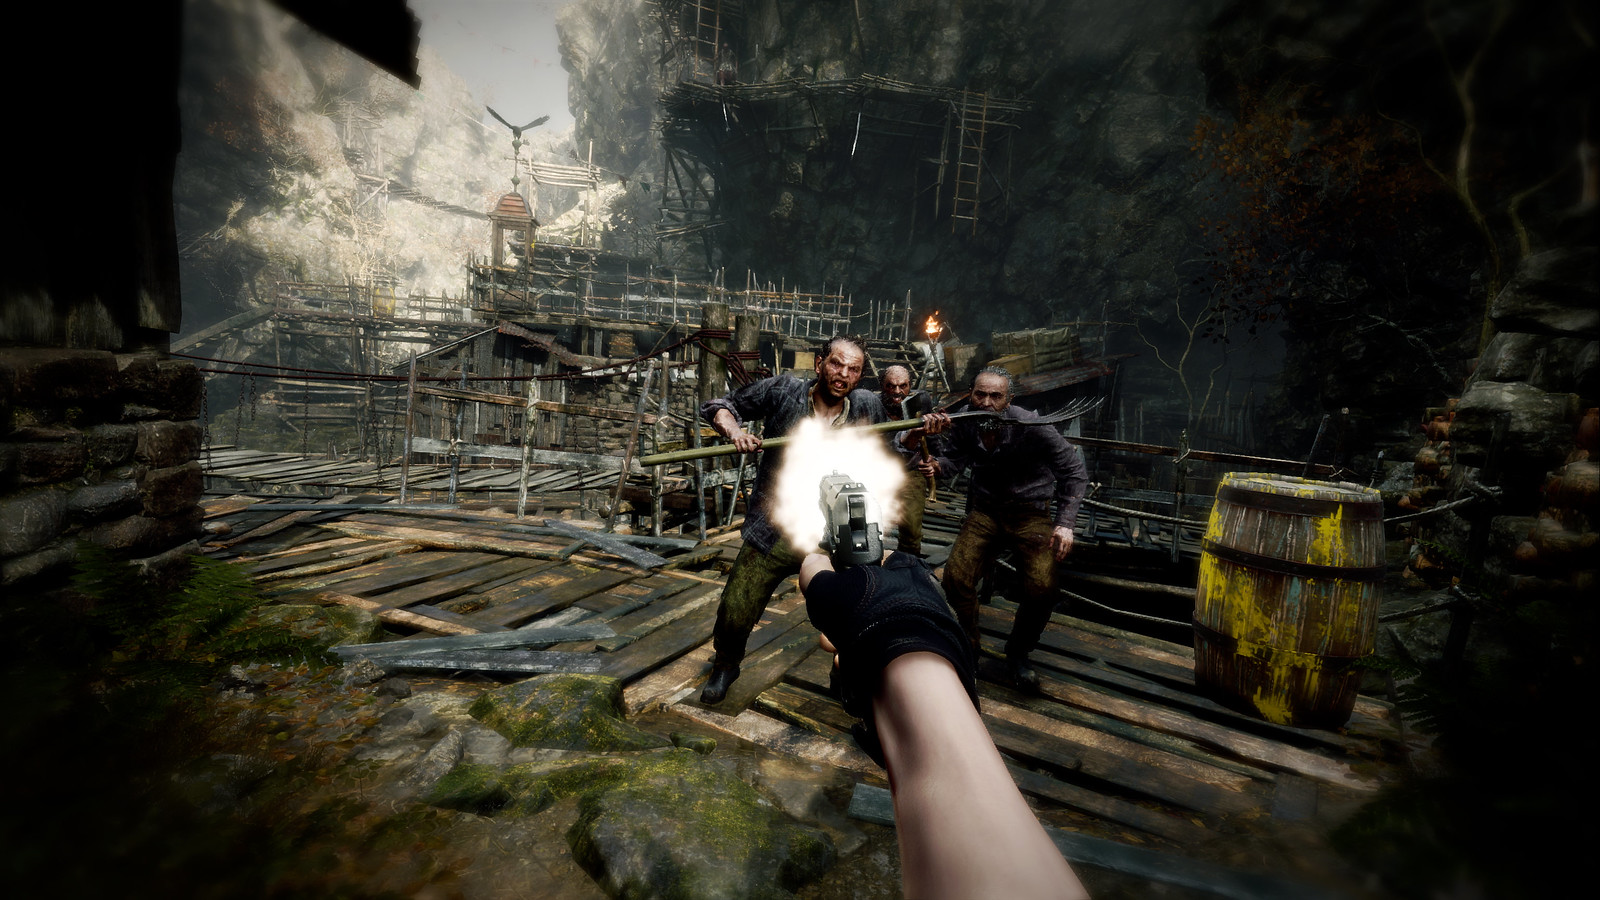 Dalla visuale in prima persona, il giocatore alza la pistola e spara contro i nemici che si avvicinano.